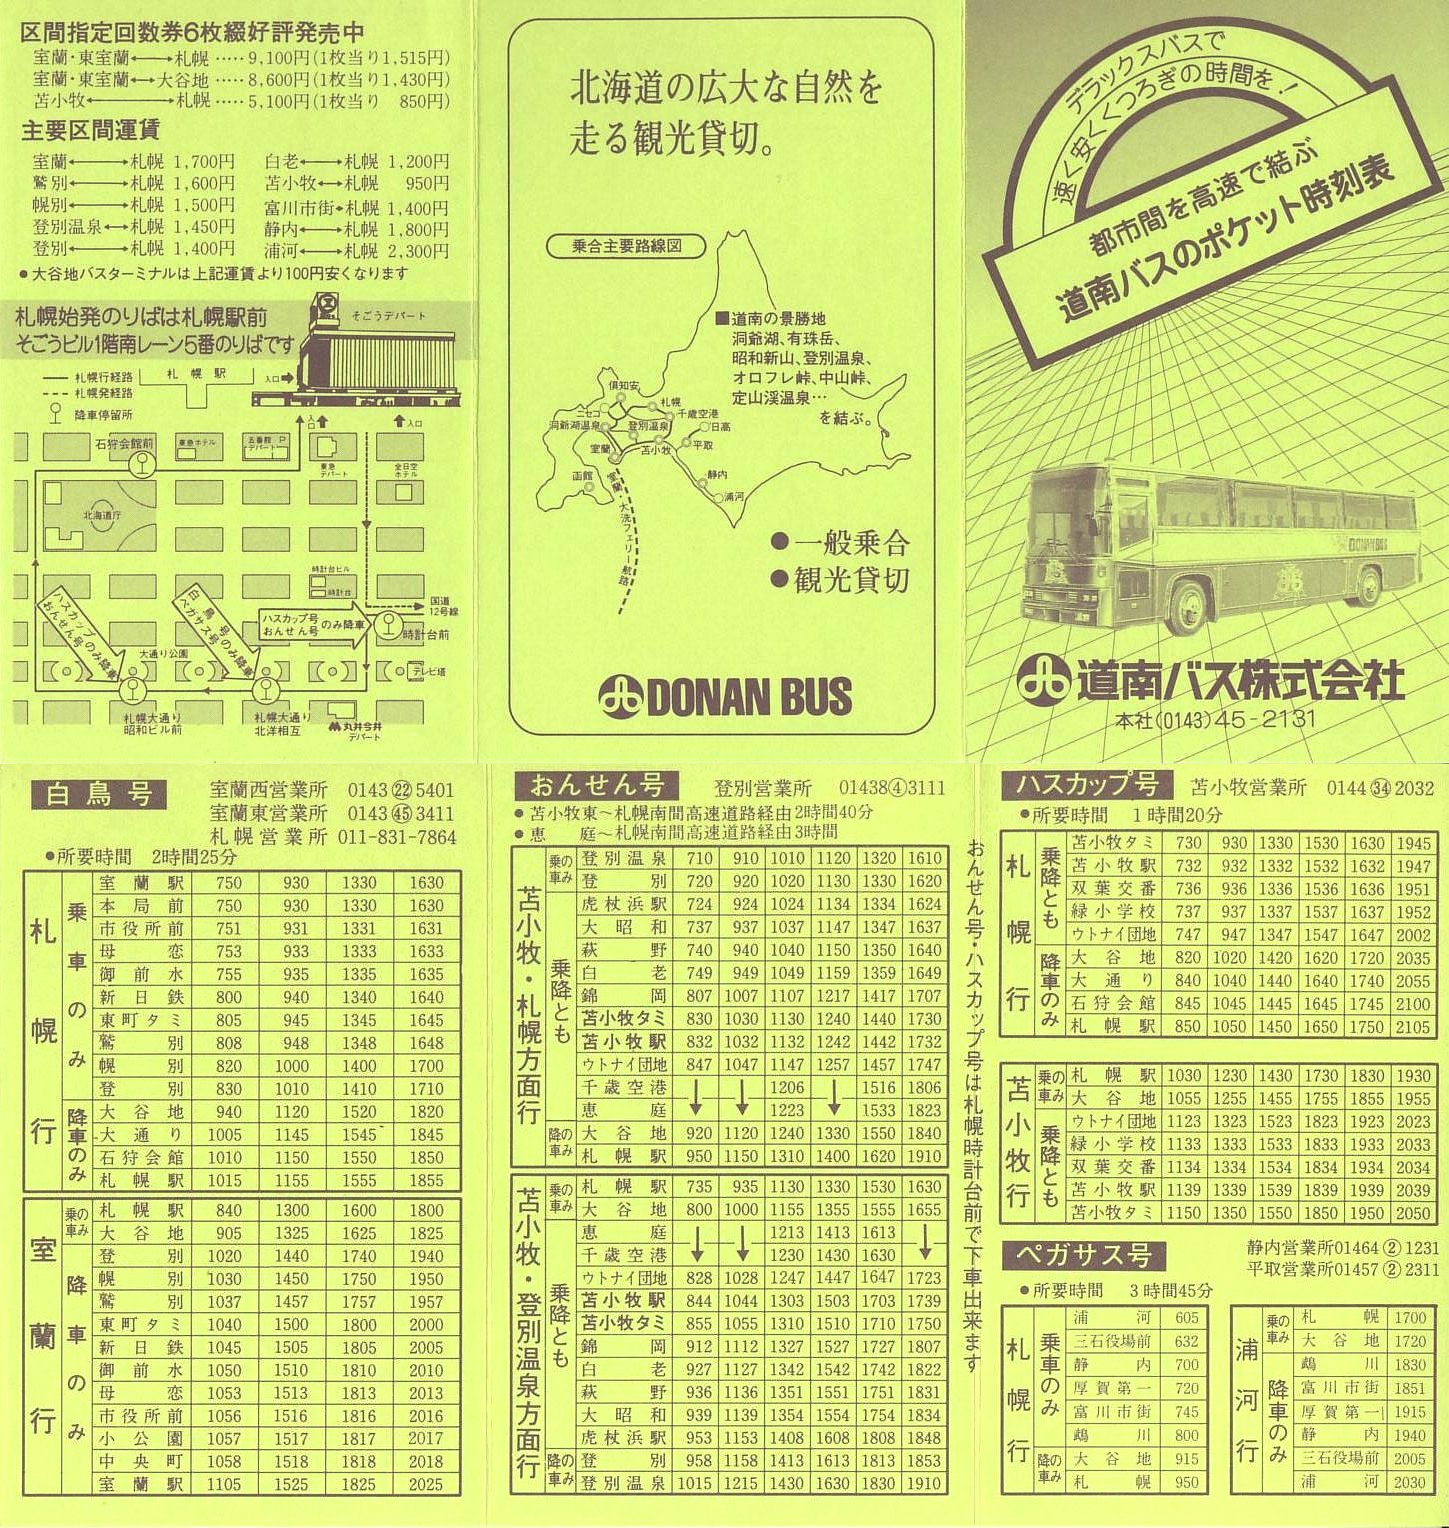 1985-04-01改正_道南バス_ポケット時刻表１